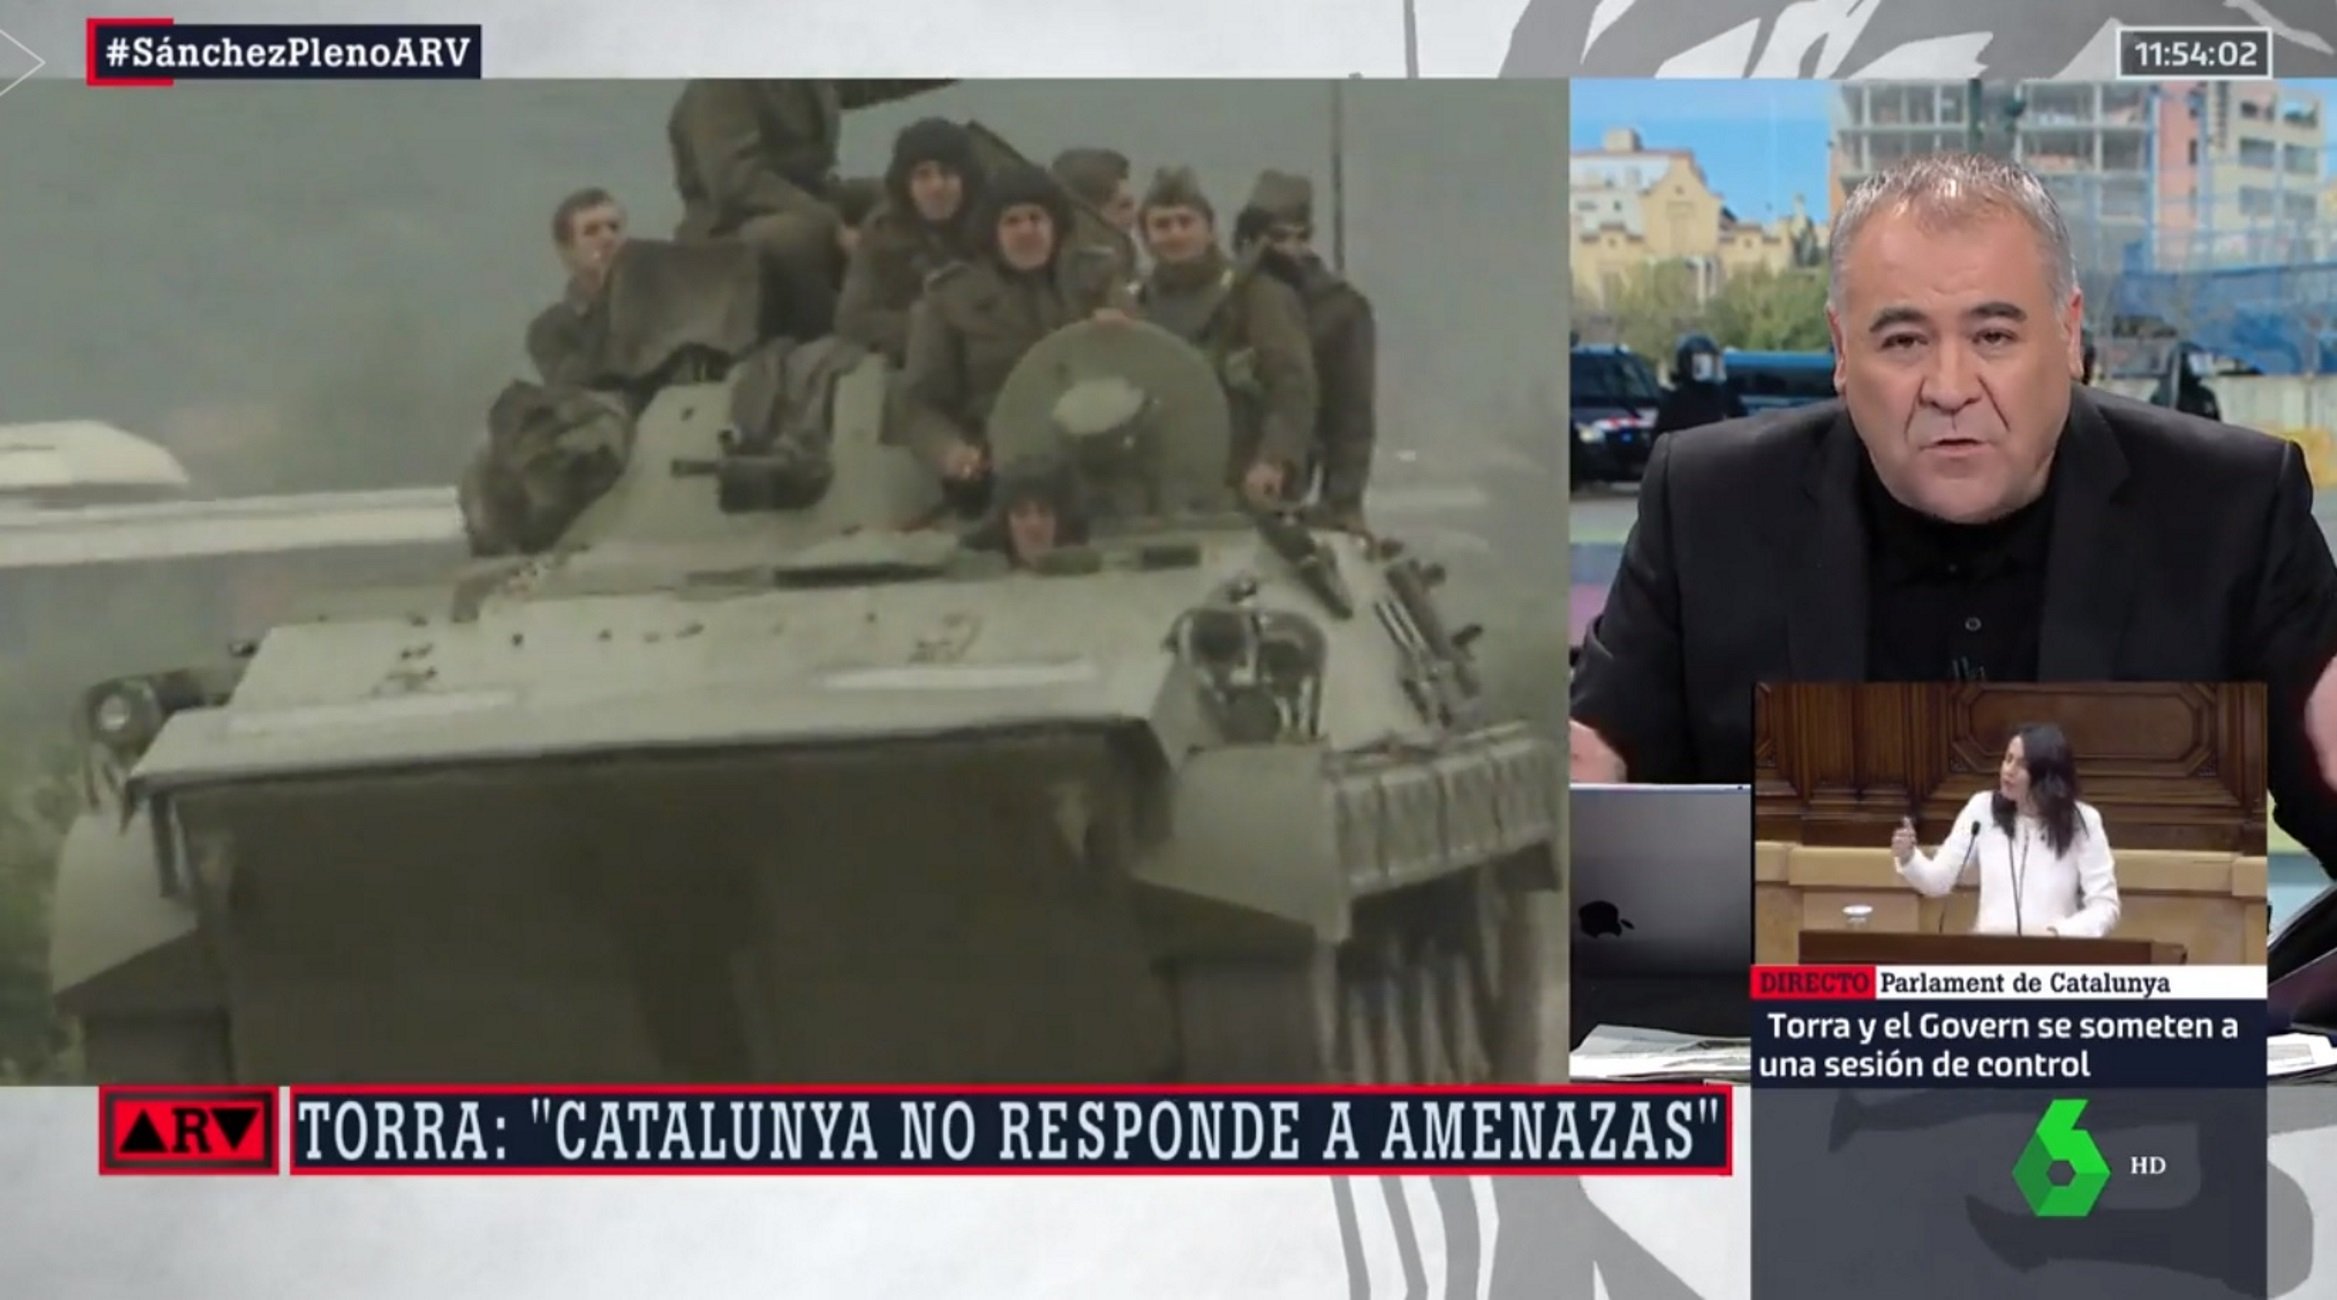 'Al rojo vivo' emite imágenes de las guerras de los Balcanes mientras hablan de Catalunya